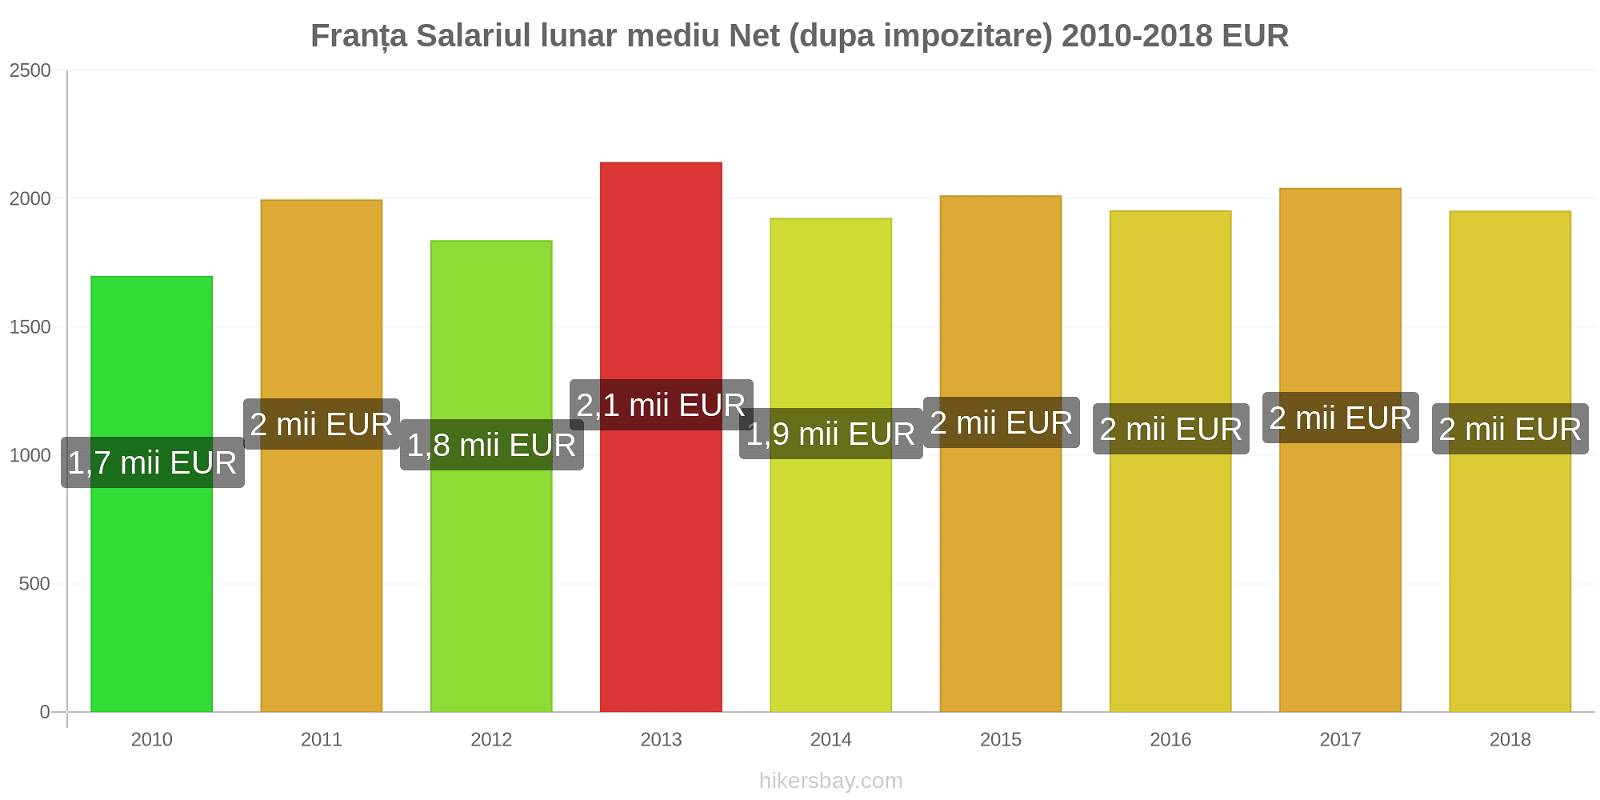 Franța schimbări de prețuri Salariu net mediu lunar (după impozitare) hikersbay.com